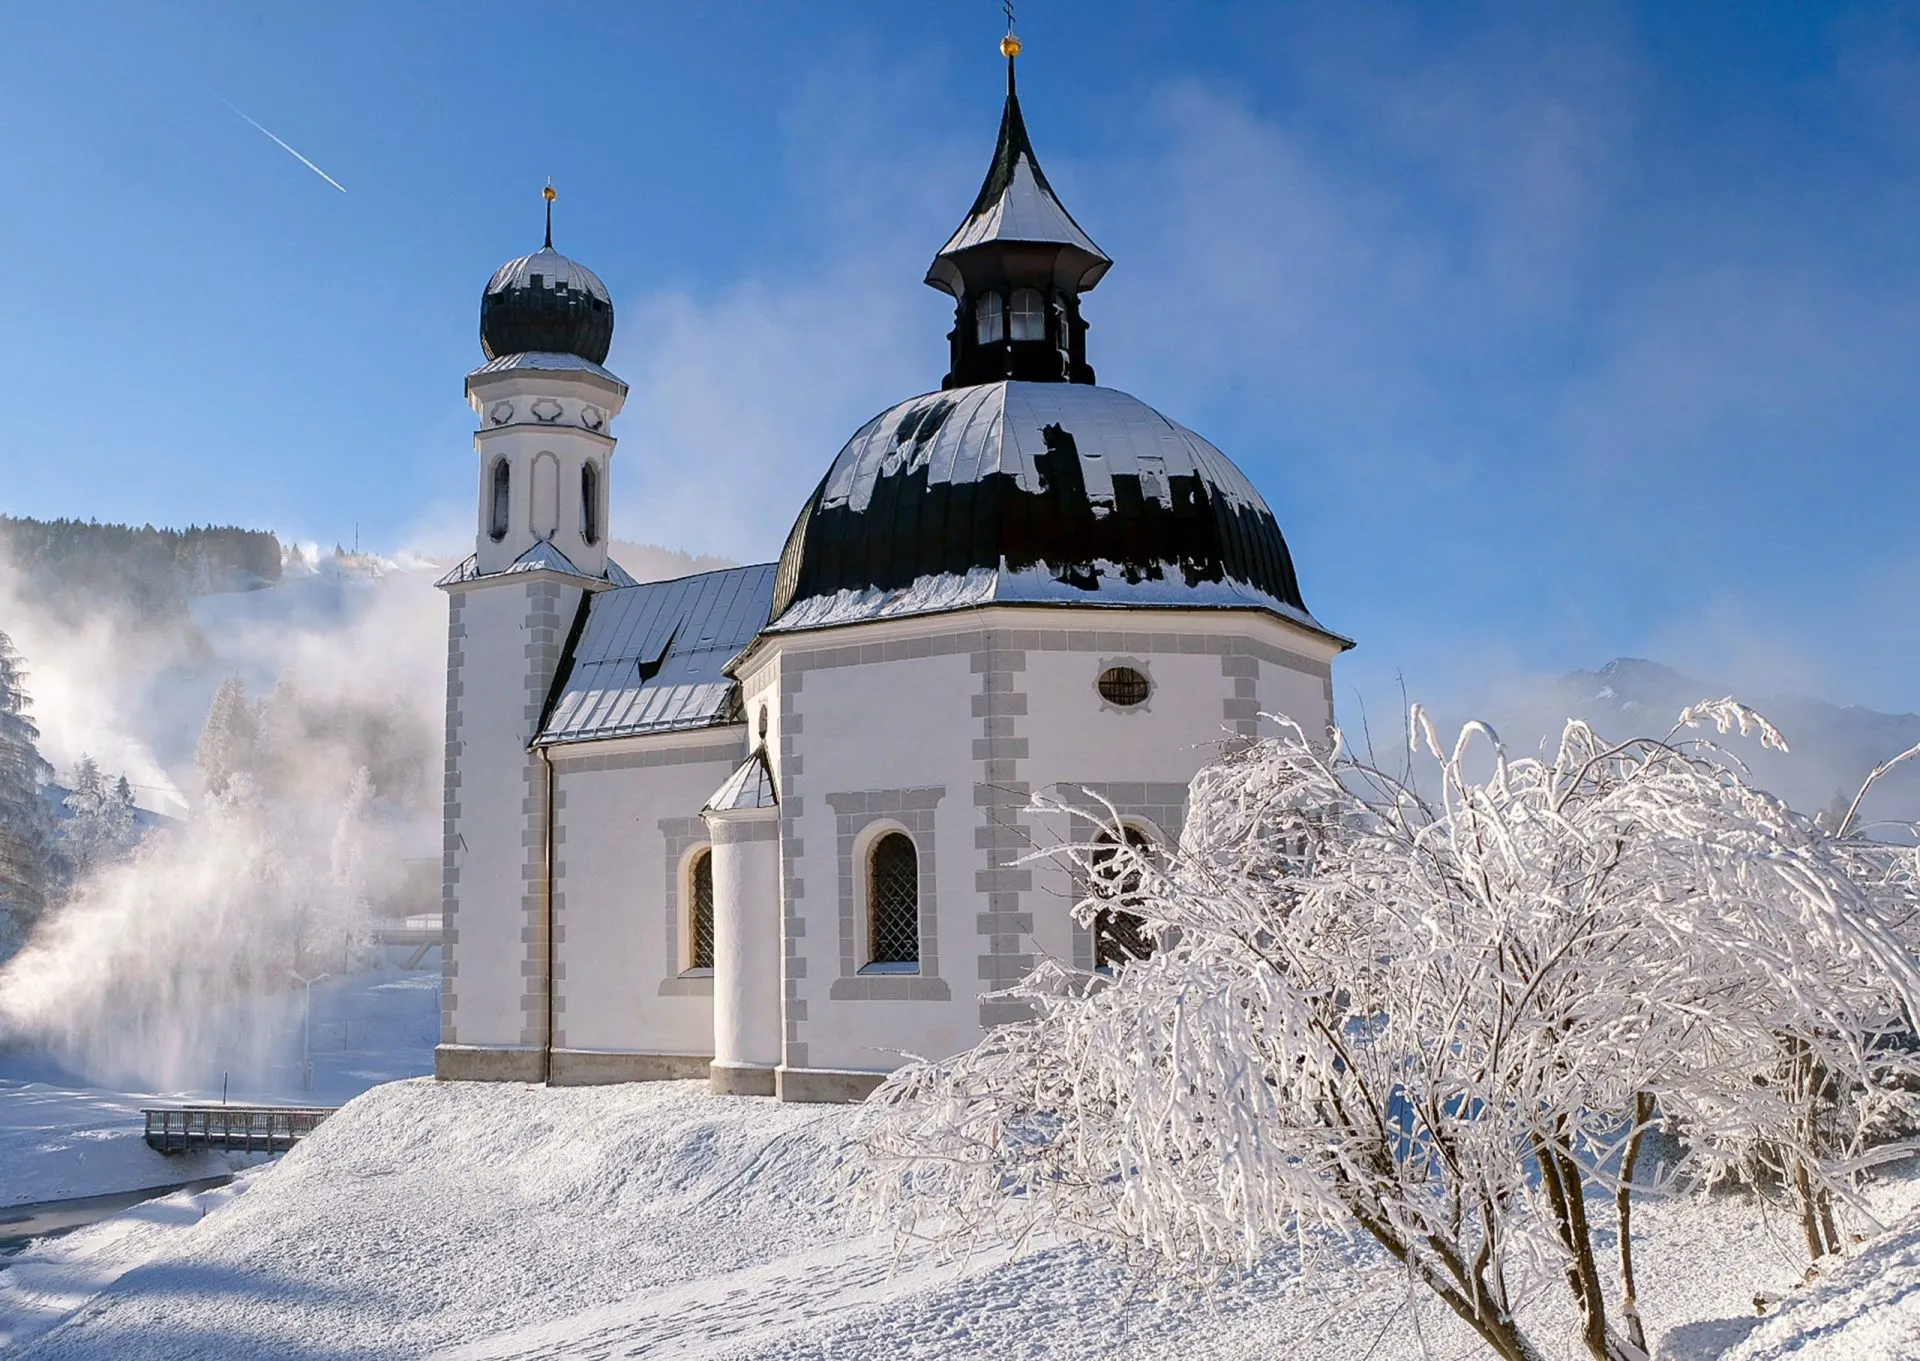 Kościół w Seefeld zimą